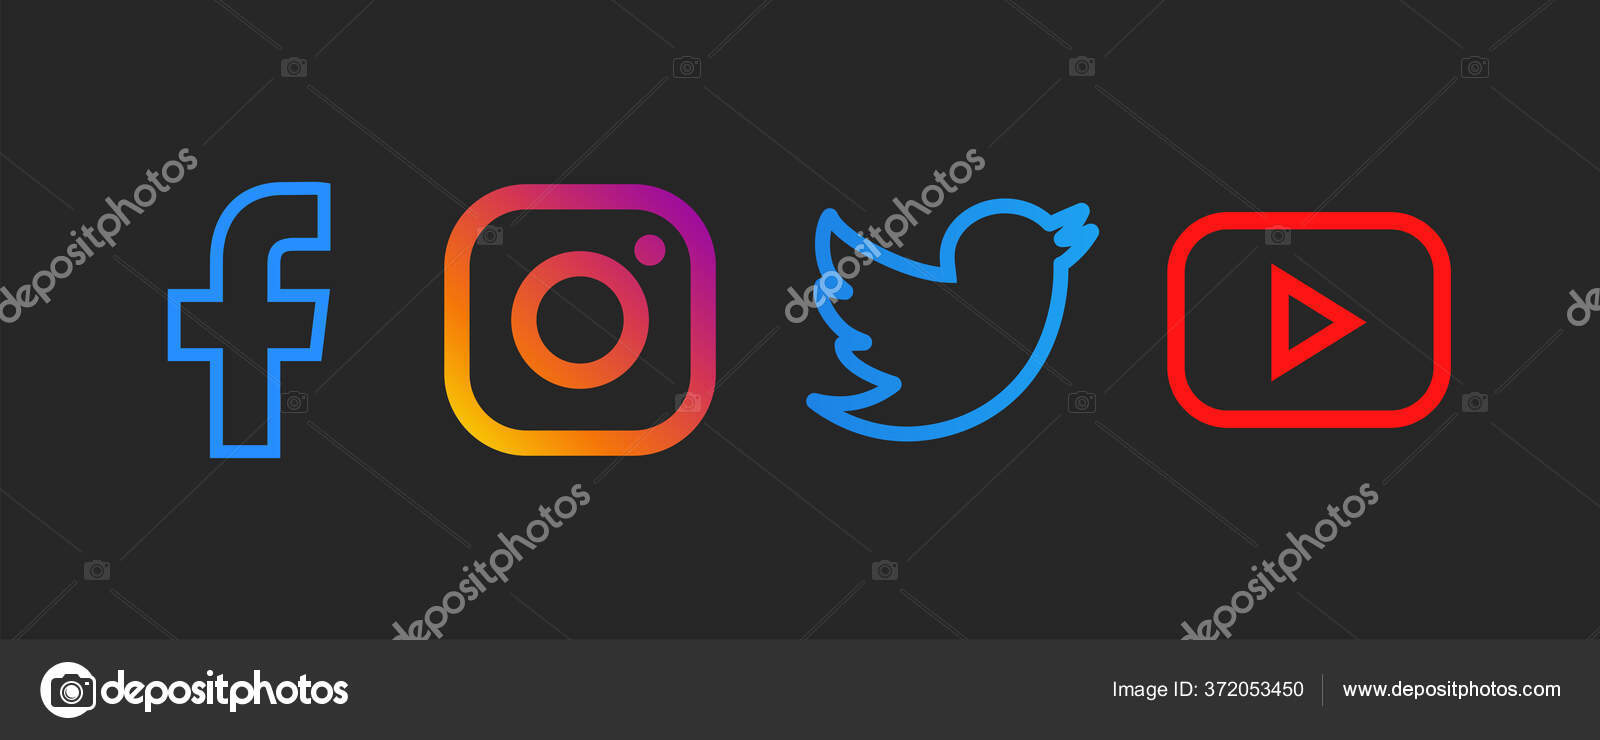 Mạng xã hội (Social Media): Khám phá cách bạn có thể kết nối với bạn bè và chia sẻ những khoảnh khắc tuyệt vời trên mạng xã hội. Hãy xem hình ảnh để tìm hiểu thêm về cách sử dụng và tận hưởng sự thuận tiện mà mạng xã hội mang lại.